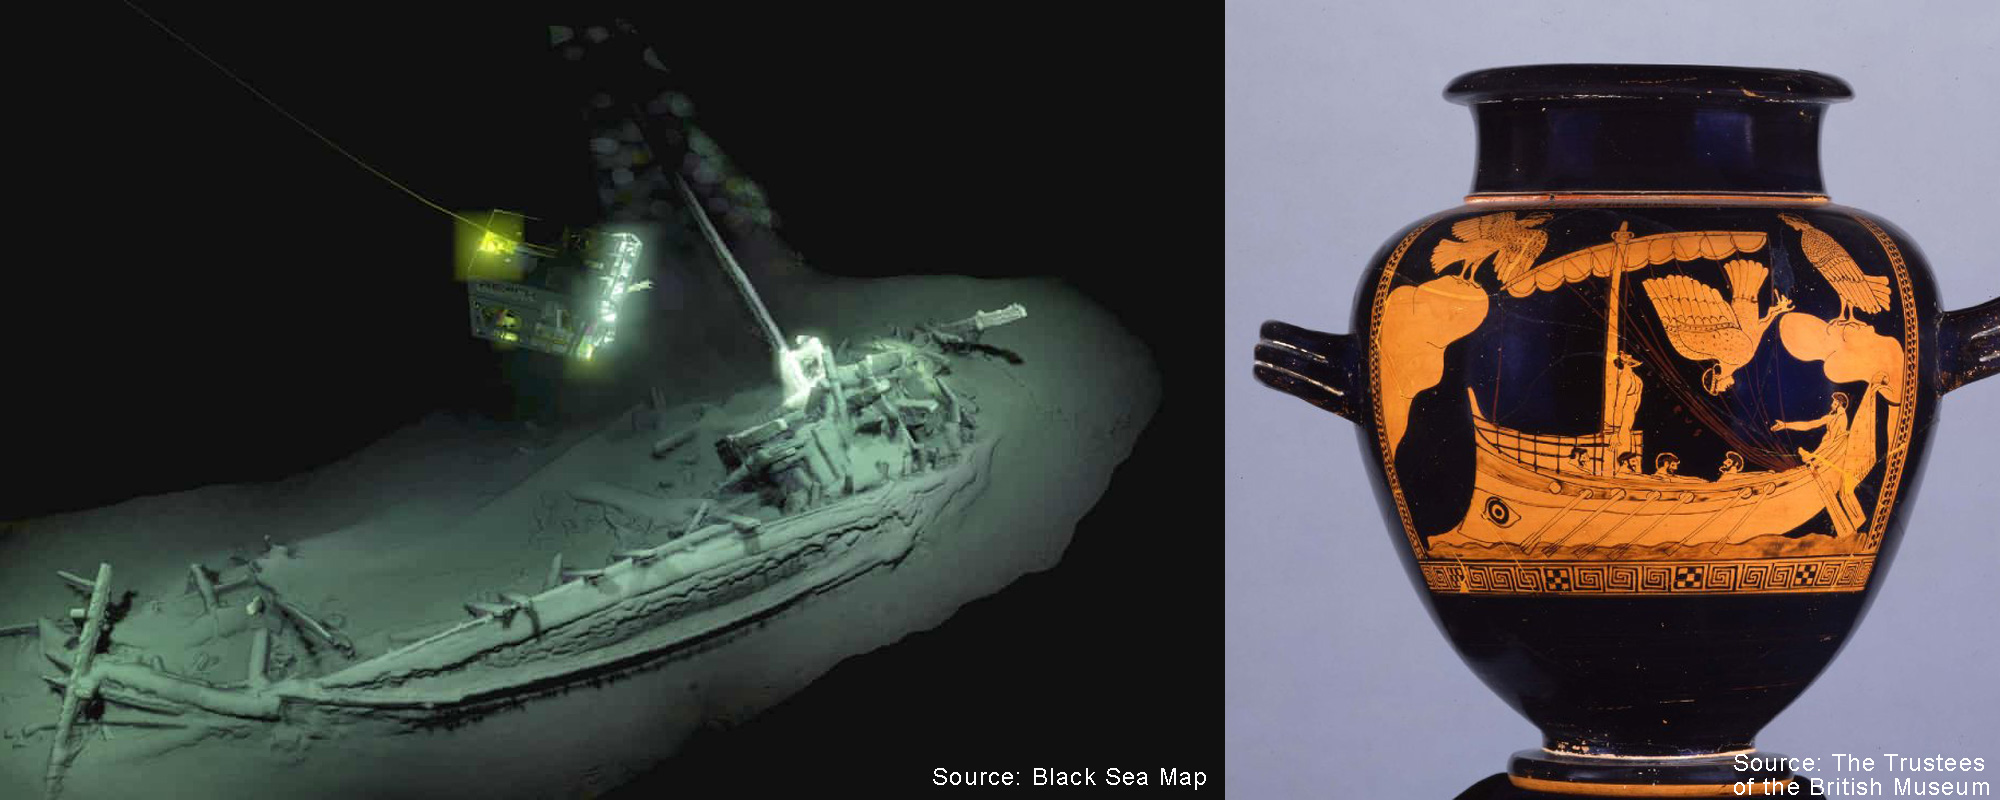 2018年於黑海發現、擁有超過二千四百年歷史的古希臘商船，為現時世上最古老沉船。商船與公元前五世紀、現存大英博物館的「海妖花瓶」上的船隻圖案極為相似